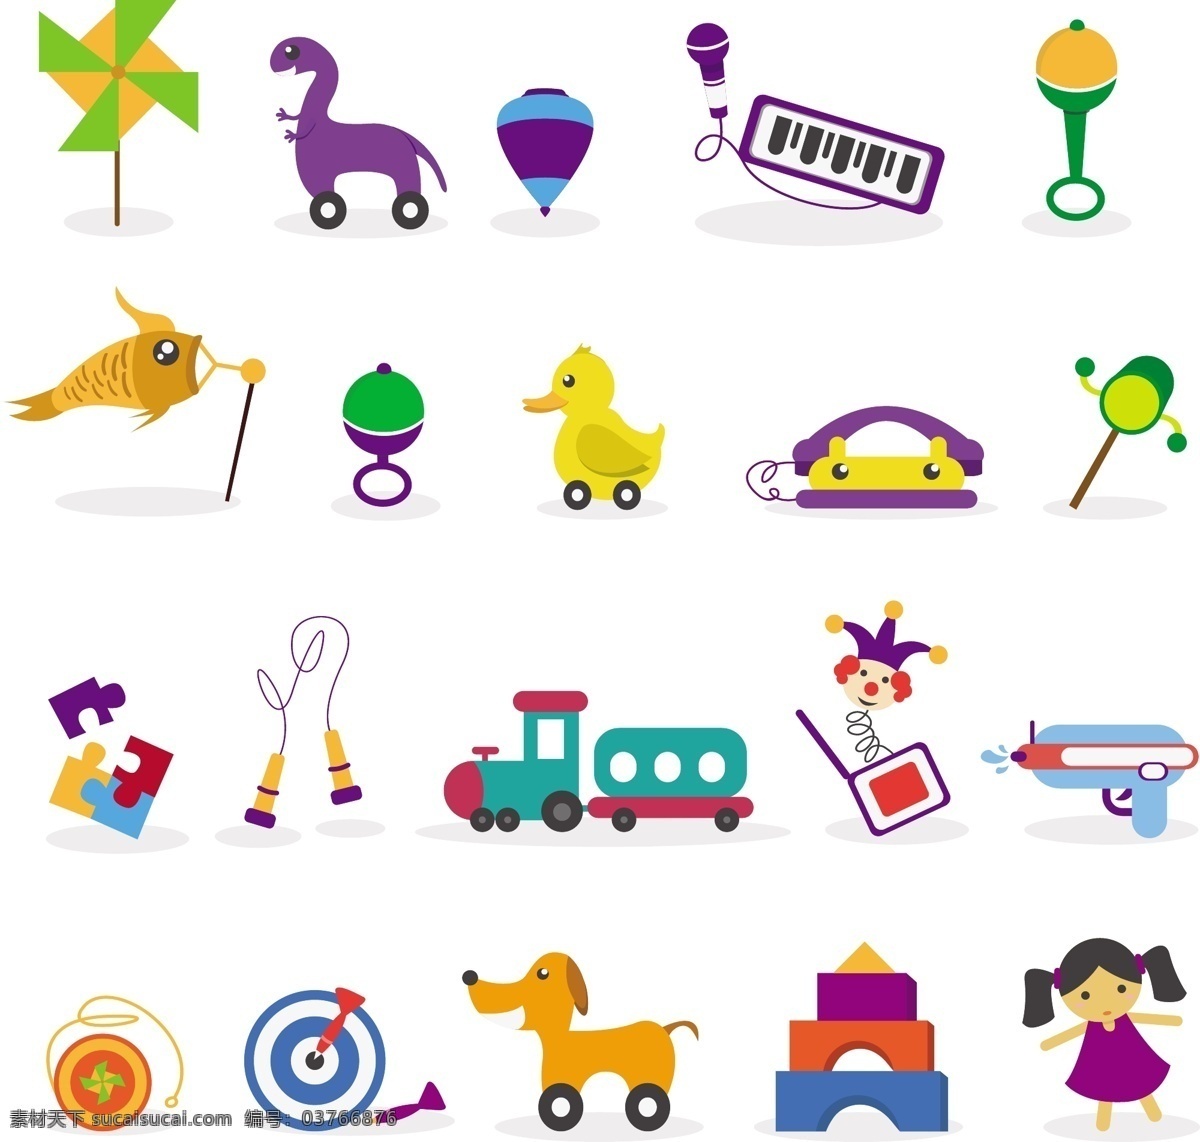 婴儿玩具收藏 汽车 婴儿 儿童 图标 卡通 可爱 孩子 熊 五颜六色 马 人 火车 游戏 机器人 玩具 球